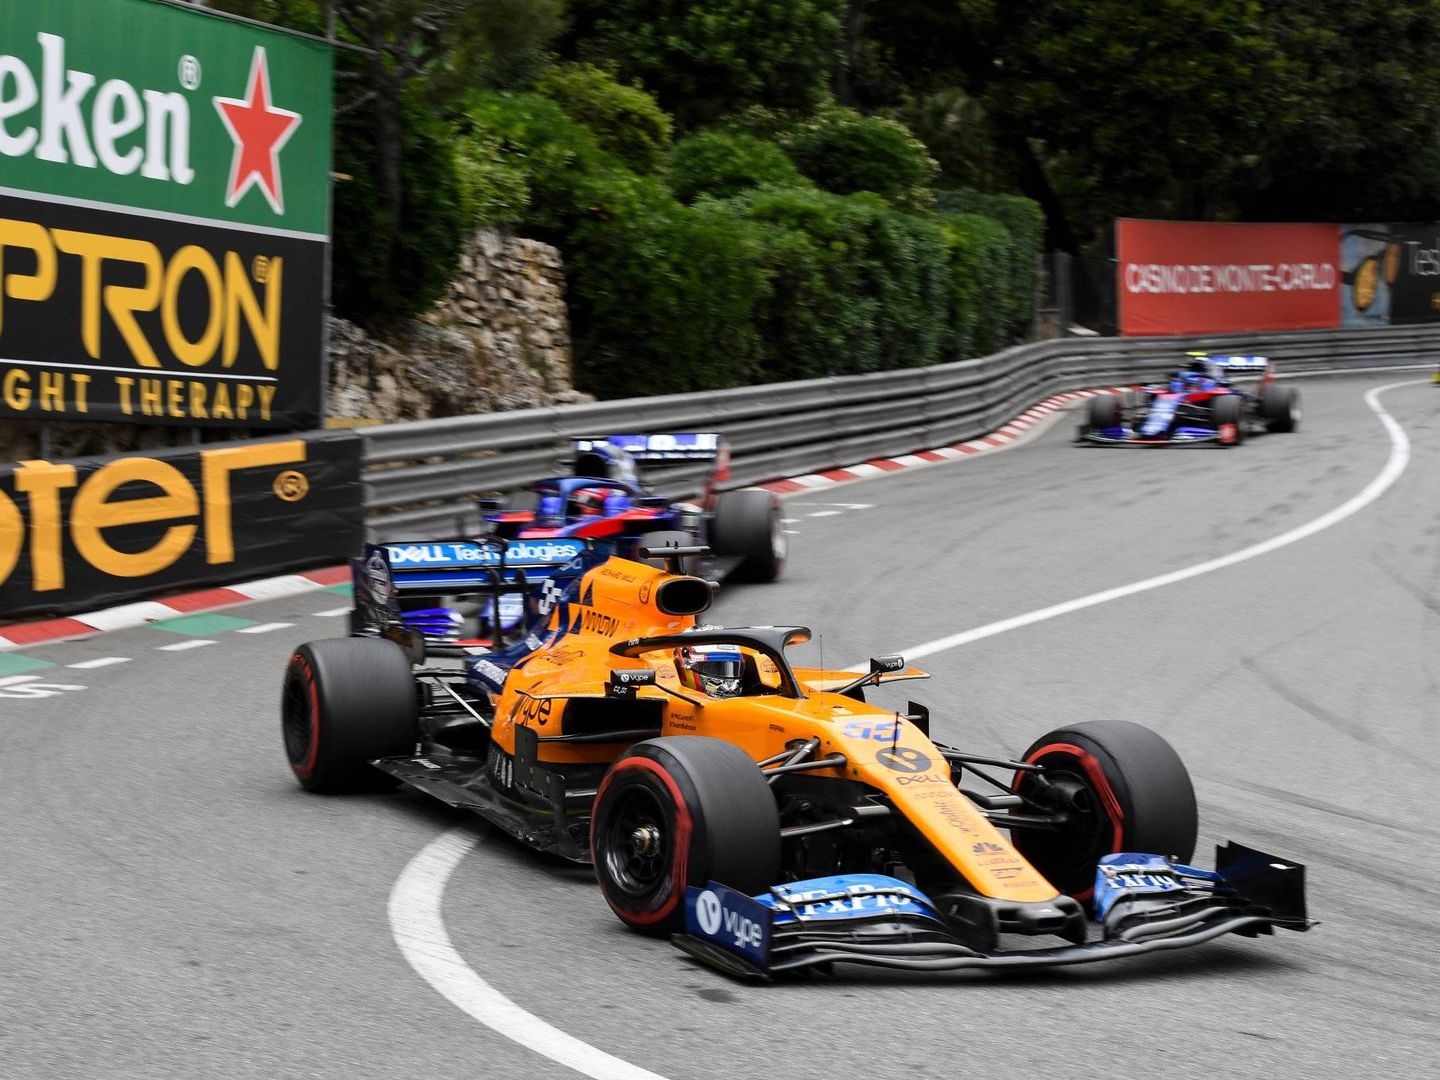 Carlos Sainz, remontando en el GP de Mónaco. (McLarenF1)